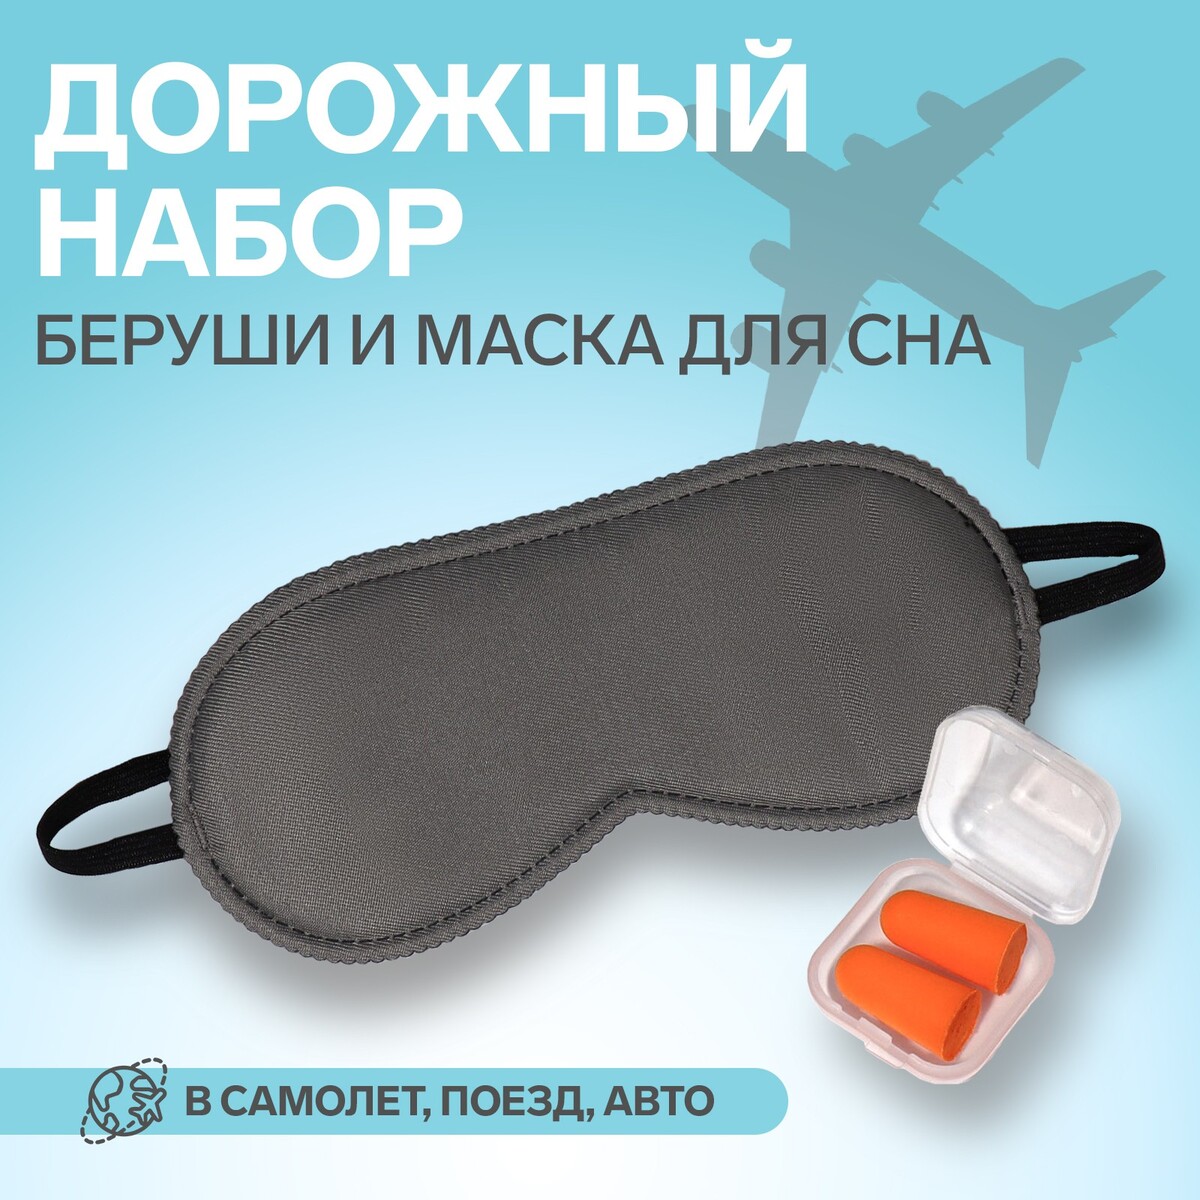 Набор туристический: маска для сна, беруши в футляре bradex набор для плавания шапочка очки зажим для носа беруши для бассейна